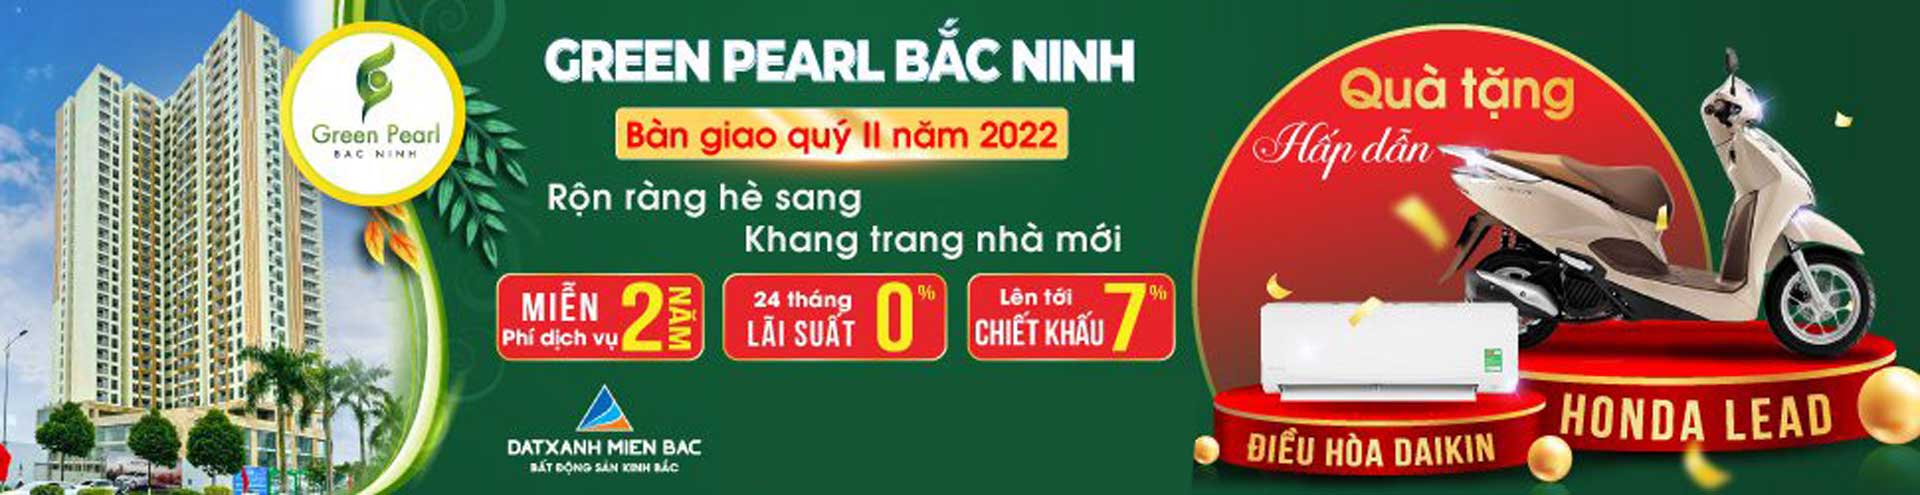 Chính sách bán hàng dự án Green Pearl bắc Ninh